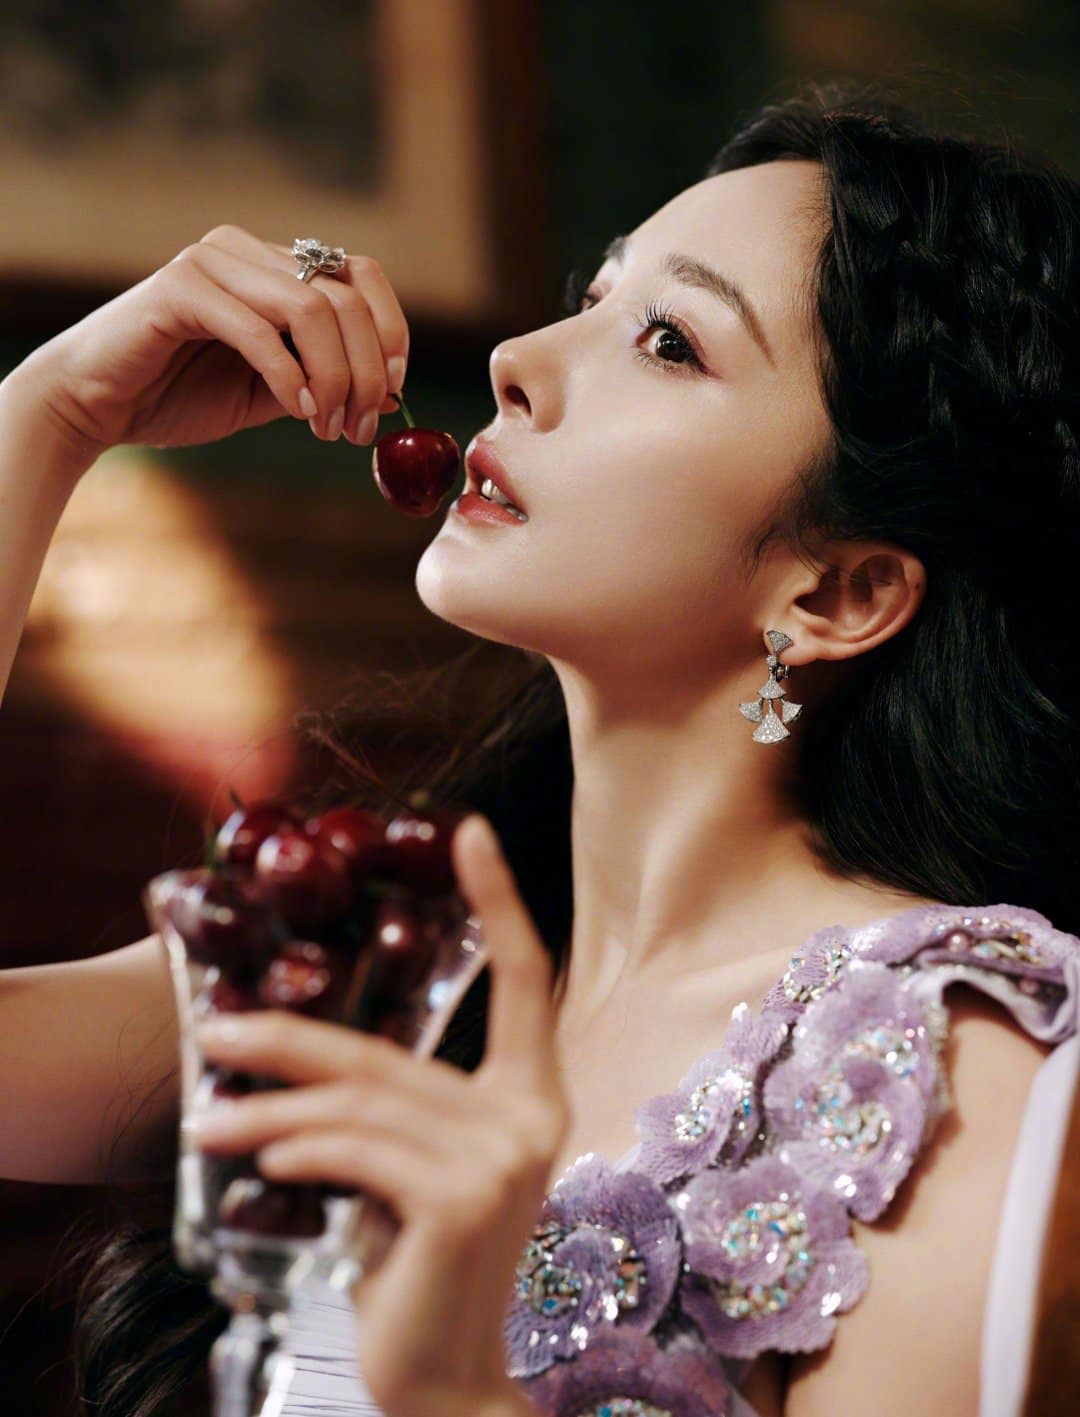 Khoe bờ môi căng mọng, Dương Mịch bị tố bắt chước phong cách 'huyền thoại' của Song Hye Kyo - Ảnh 2